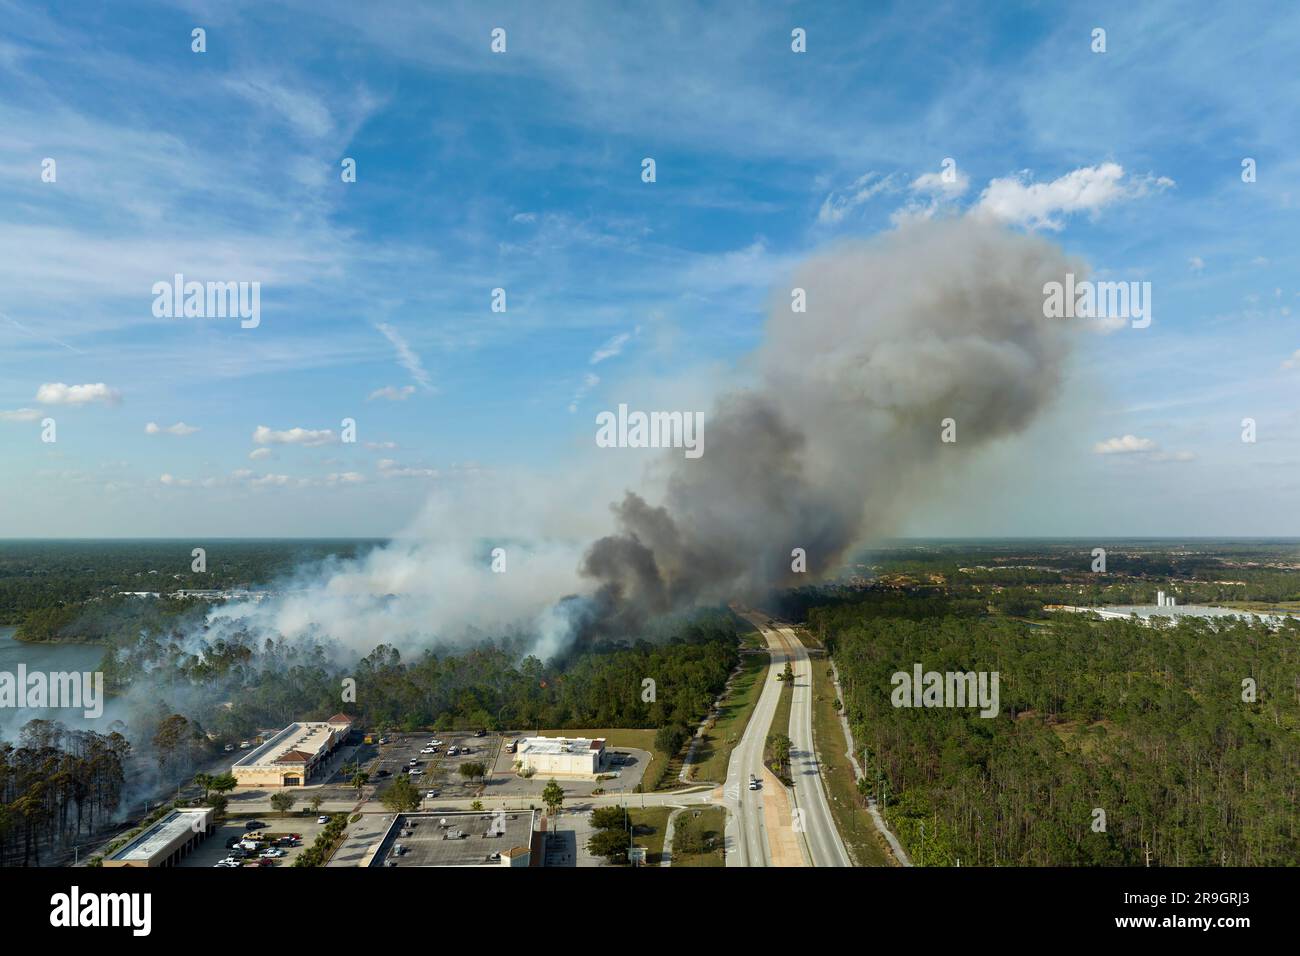 Vue depuis le dessus du lagre feu de forêt gravement brûlé dans la ville de North Port, Floride. Flammes chaudes dans une forêt avec une atmosphère polluante de fumée toxique Banque D'Images